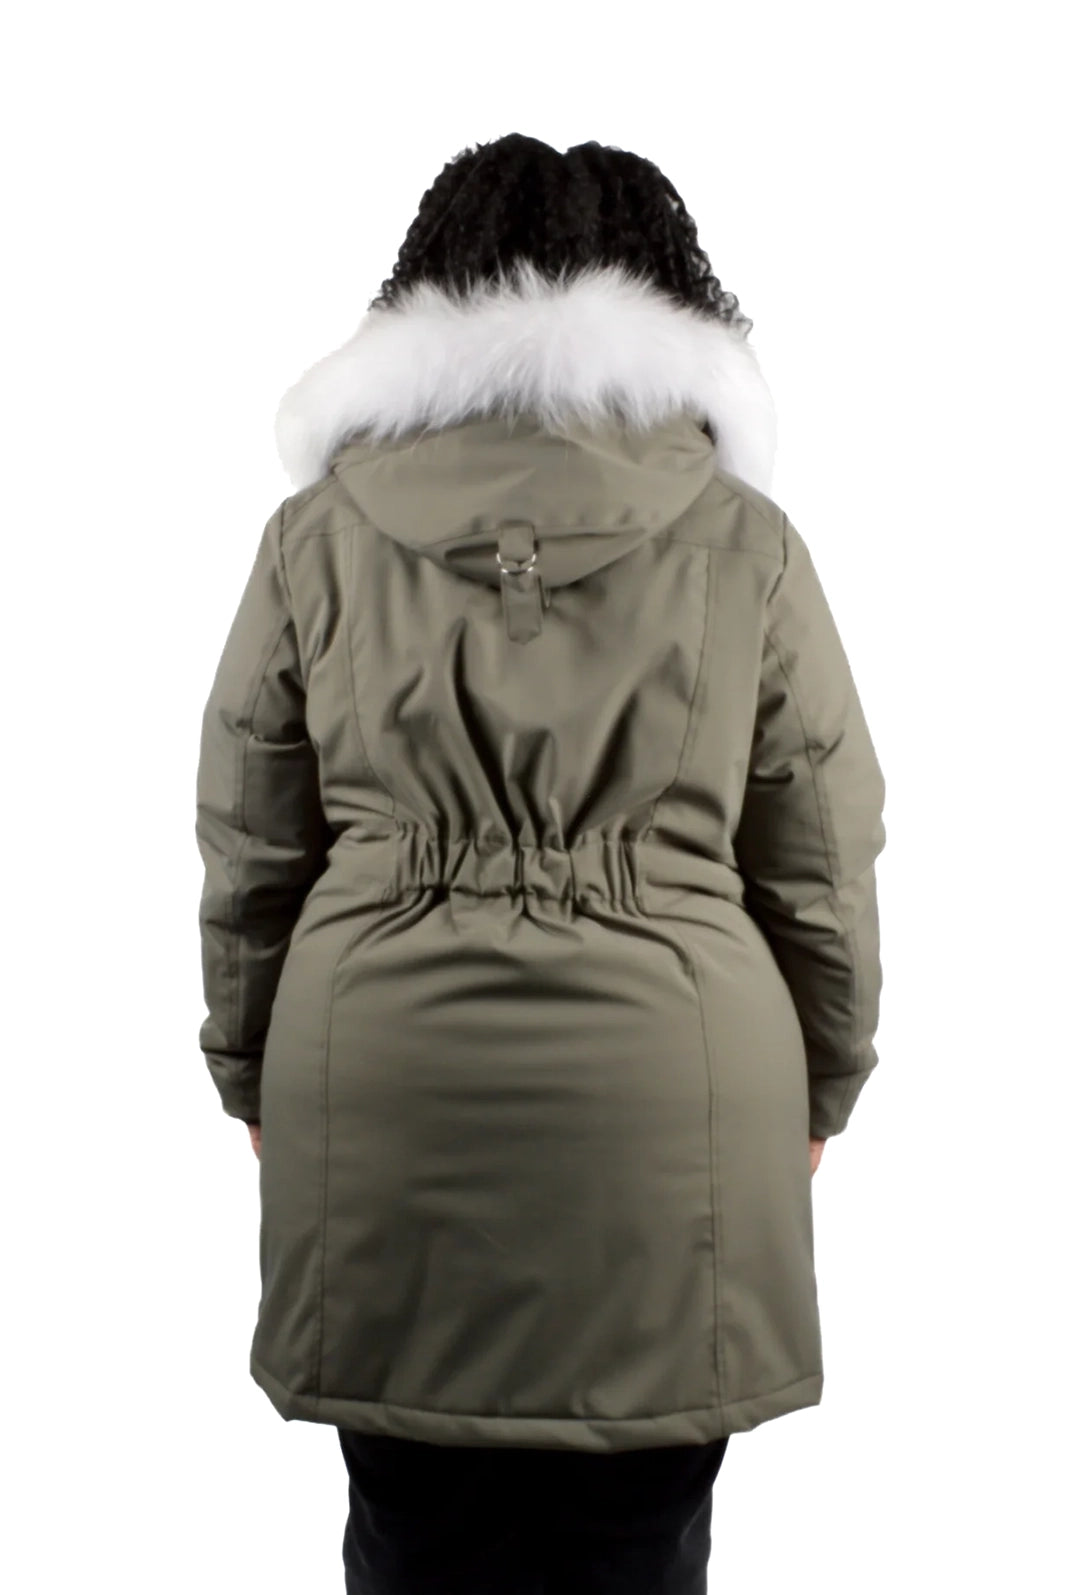 Manteau isolé pour l'hiver glacial Yellowknife Taille Plus de Sportive Plus